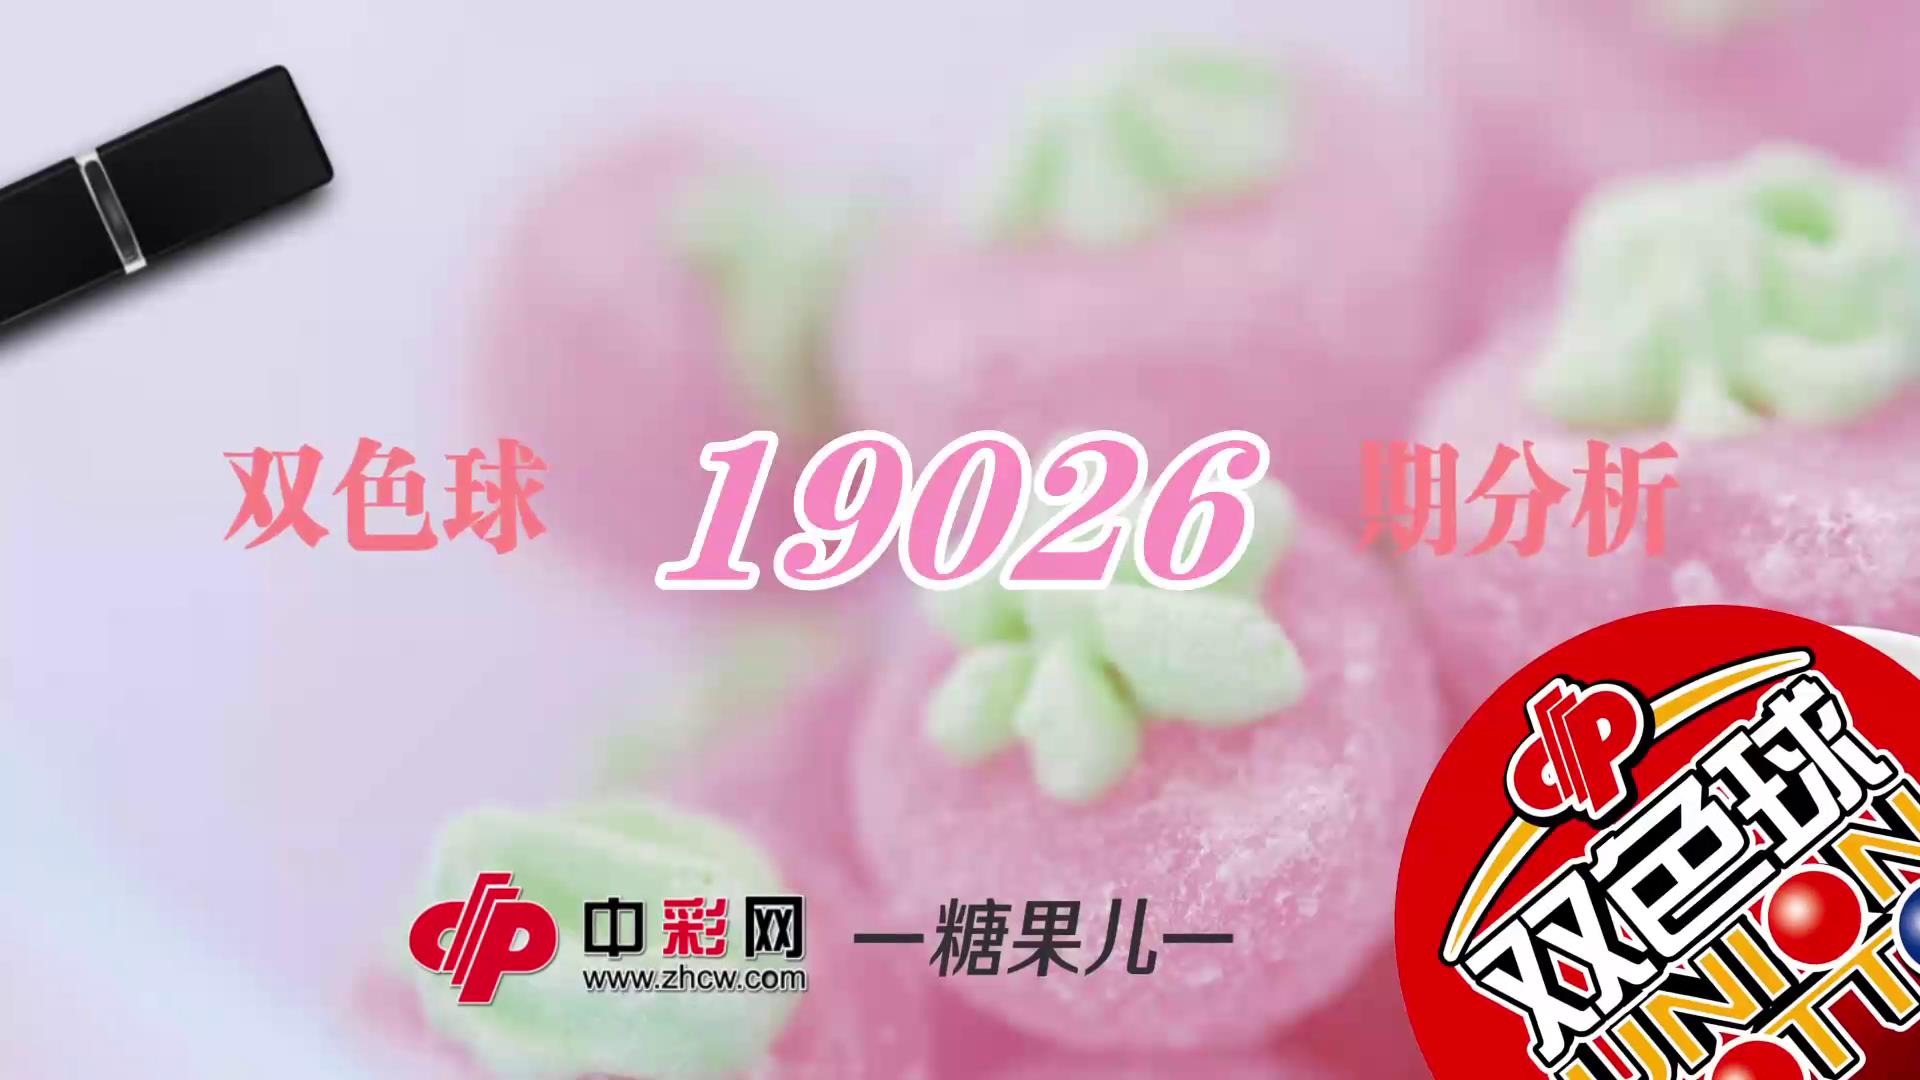 【中彩视频】糖果儿双色球第19026期